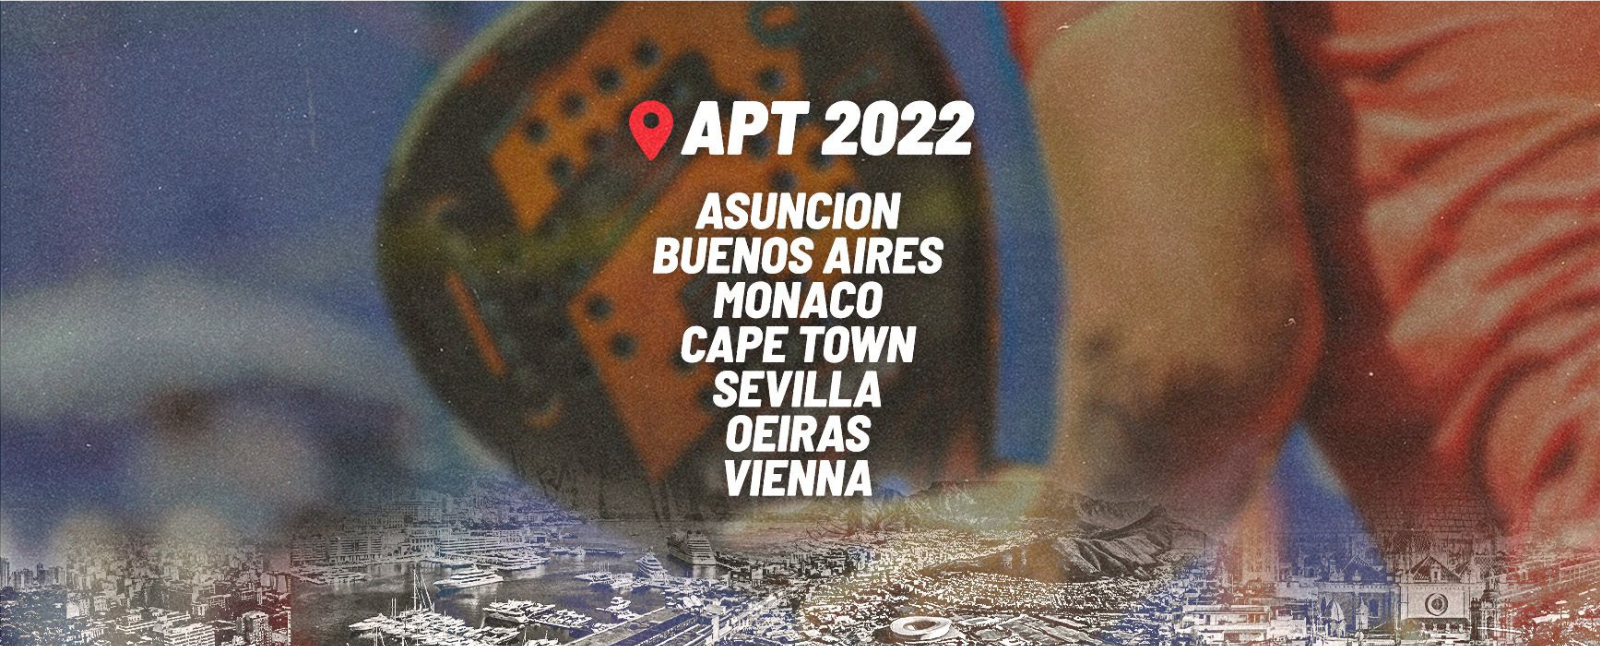 Det spektakulära schemat för APT Padel Turné för 2022